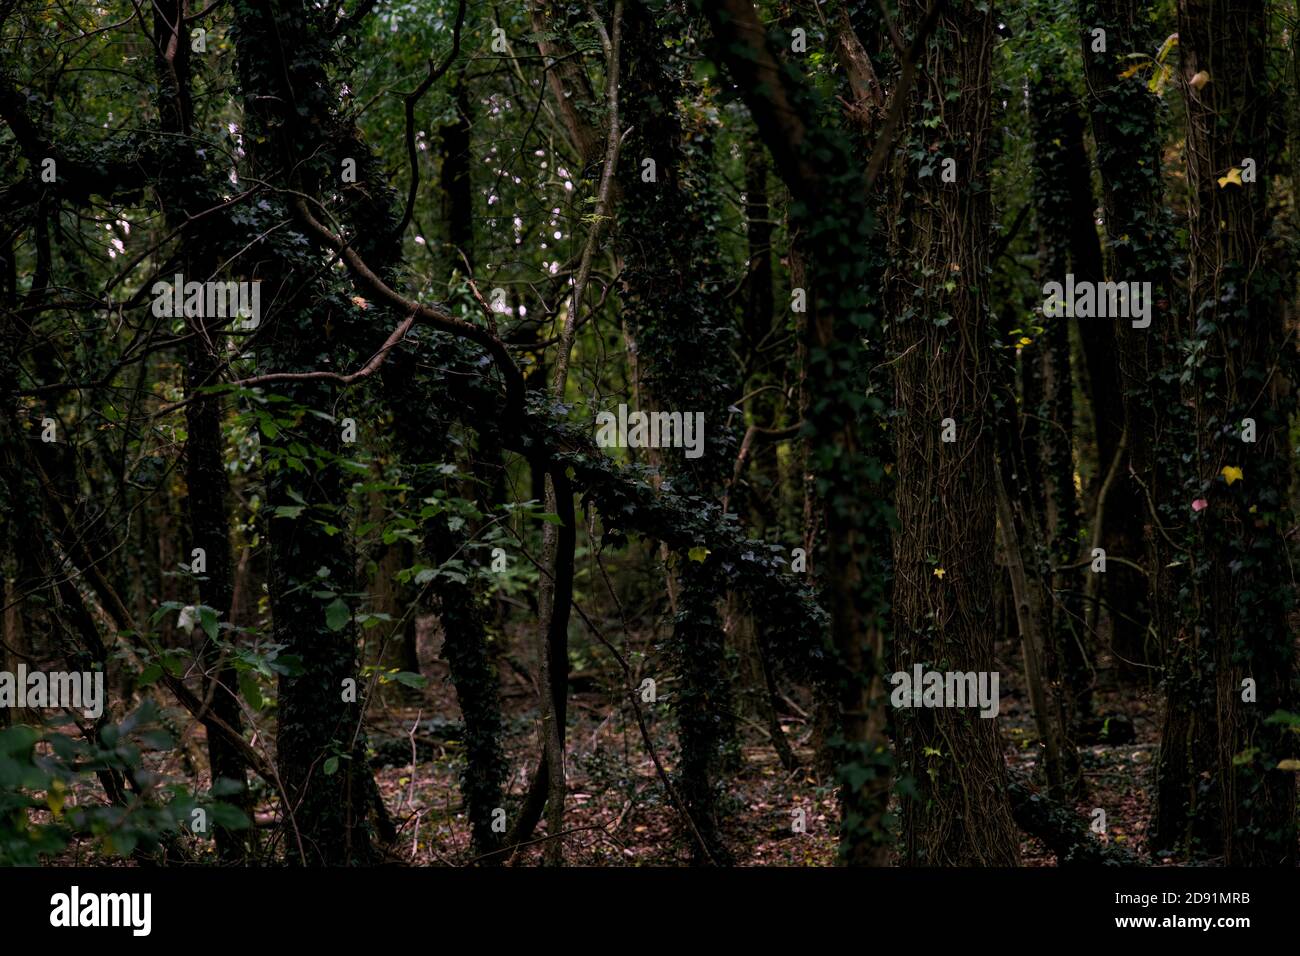 Forêt sombre sinistre avec de grands arbres et des vignes. Composition horizontale, plein format Banque D'Images